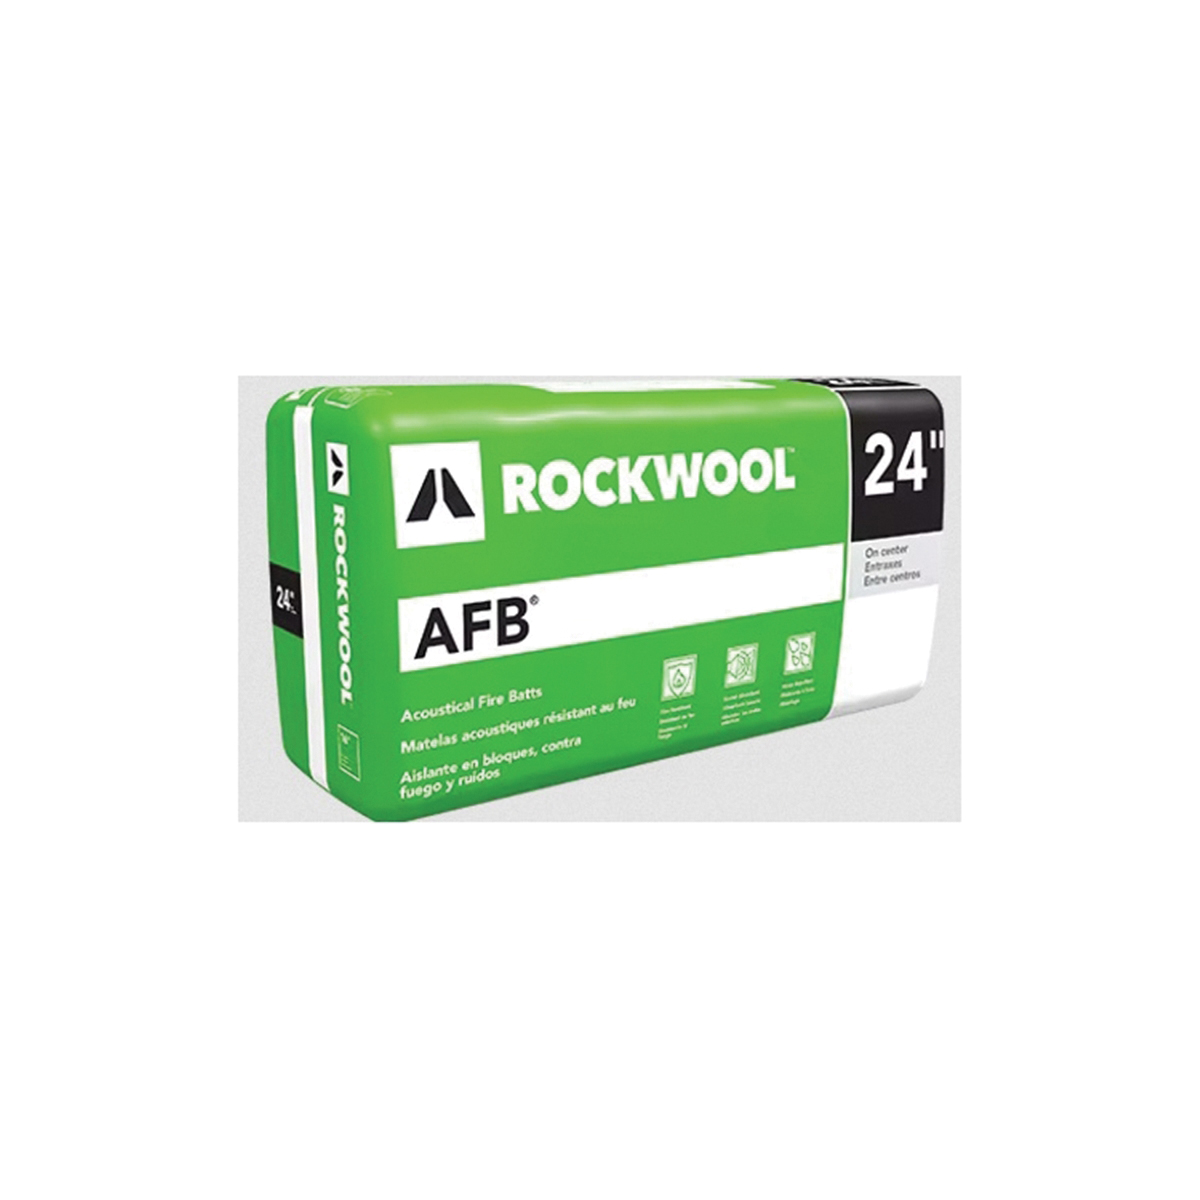 ROCKWOOL Acoustic Fire Batt (AFB) 6